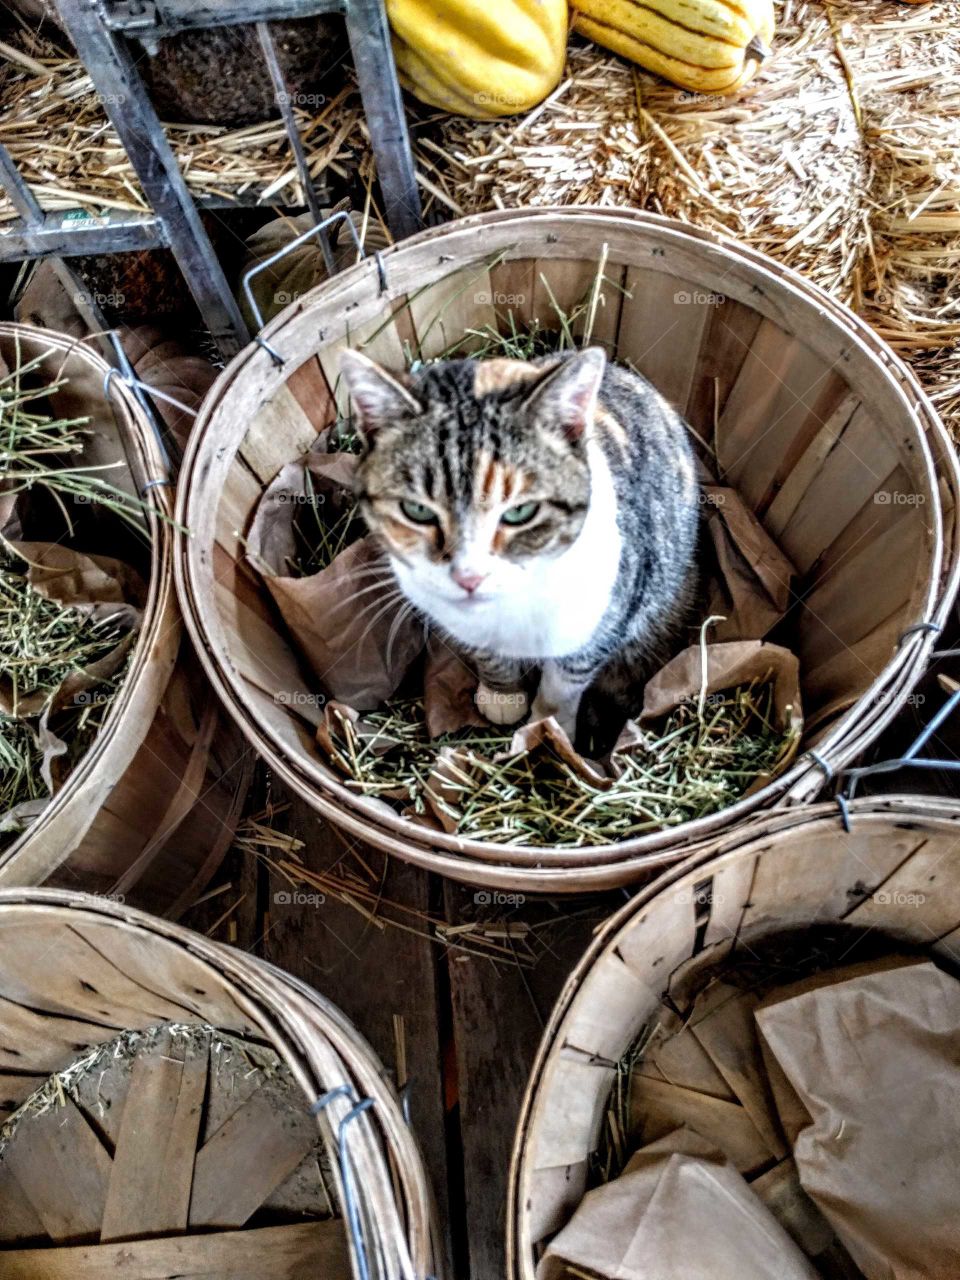 Kitten in a basket